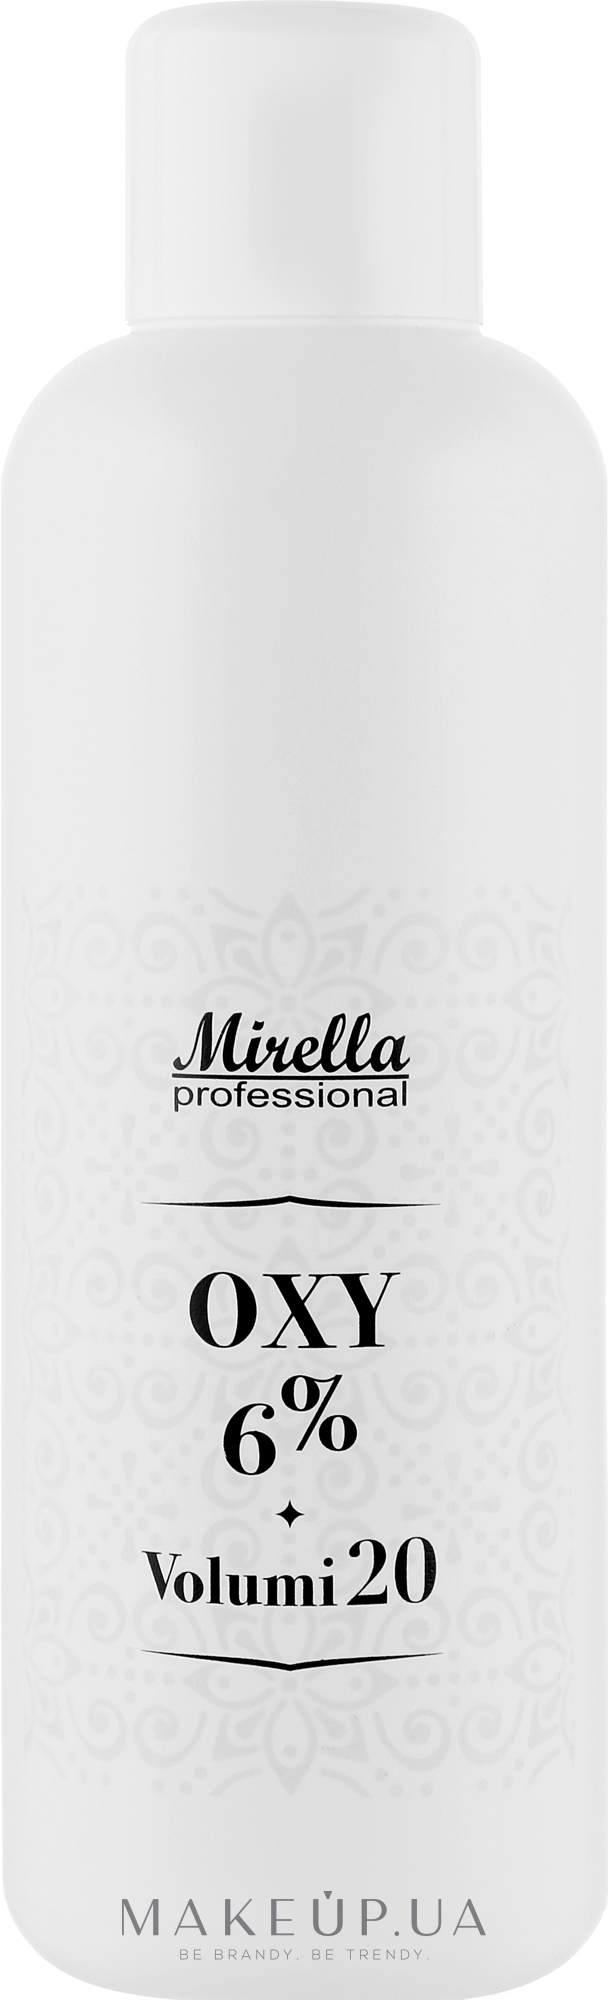 Универсальный окислитель 6% - Mirella Oxy Vol. 20 — фото 1000ml